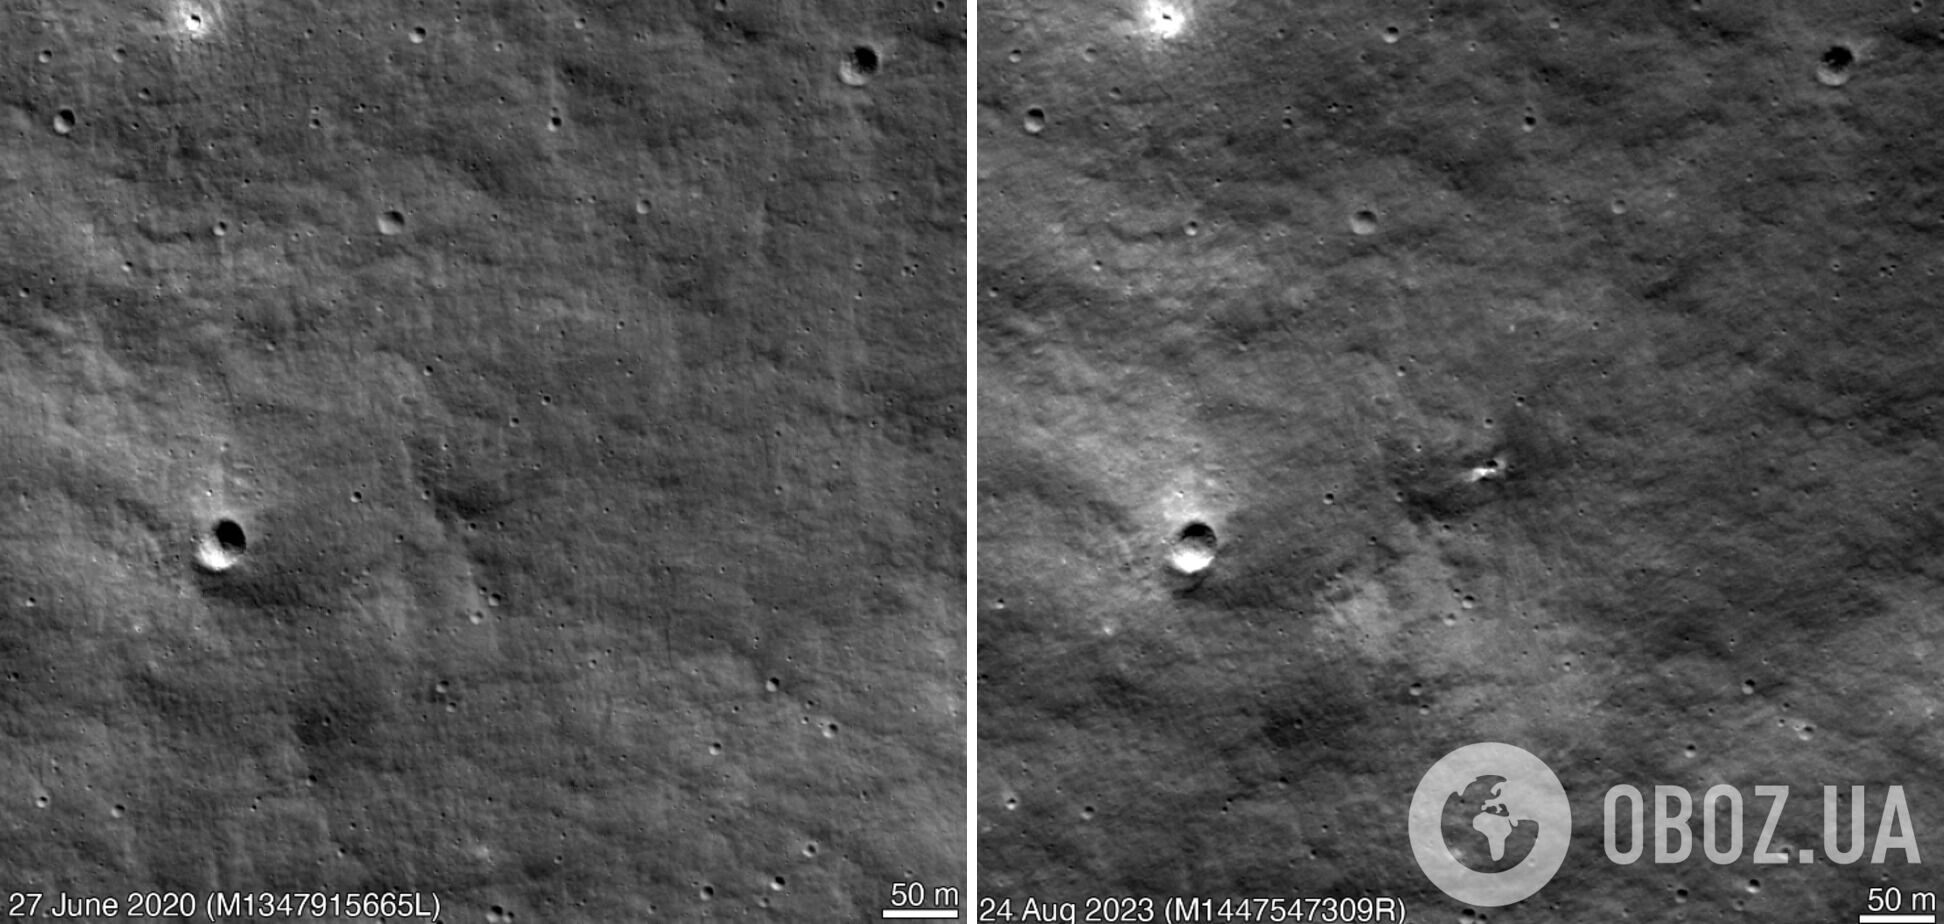 Россия способна пробить дно не только на Земле: от падения модуля "Луна-25" на Луне образовался кратер. Фото